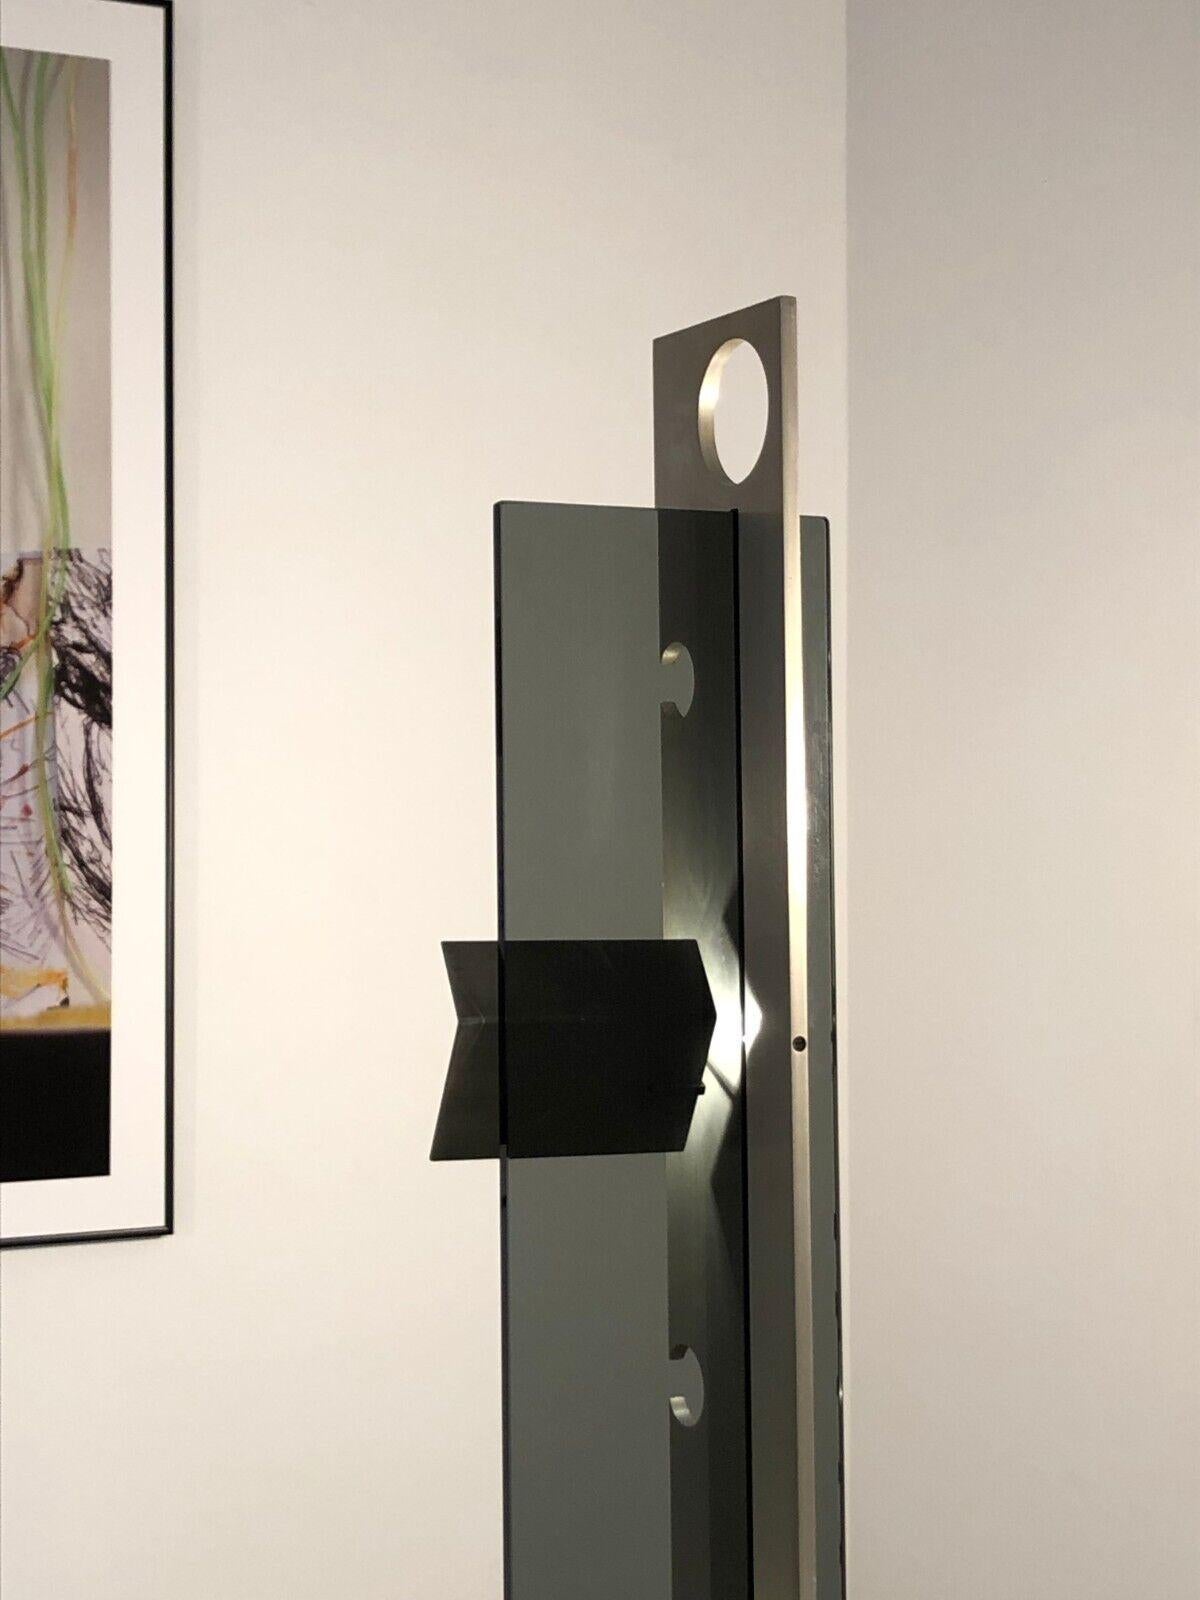 Rare lampadaire d'Angelo Brotto, édition Esperia, Italie 1960-1970. Inspiré par le constructivisme, le modernisme et l'AGE, ce lampadaire possède une base en X en métal laqué noir, un axe central en acier avec 5 perforations (quatre utiles et une